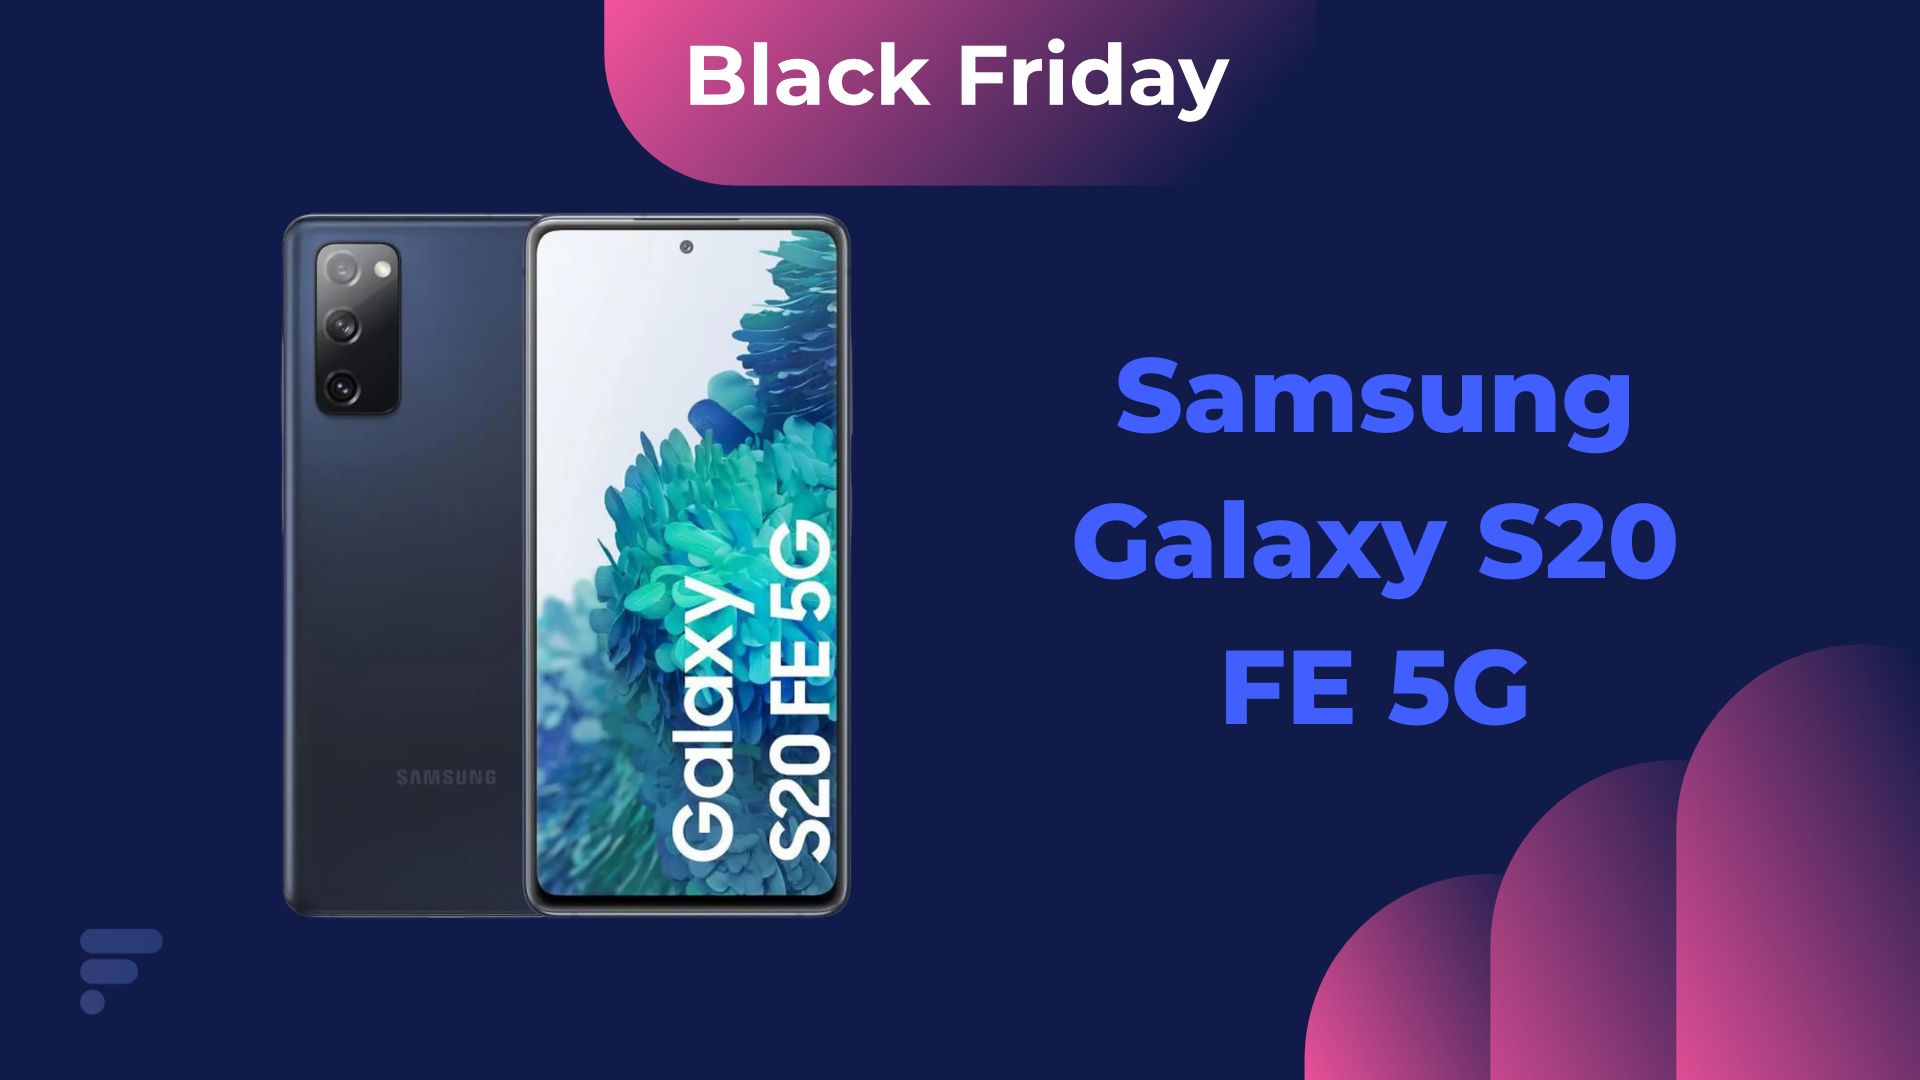 Le Black Friday permet d’obtenir le Samsung Galaxy S20 FE 5G à prix cassé